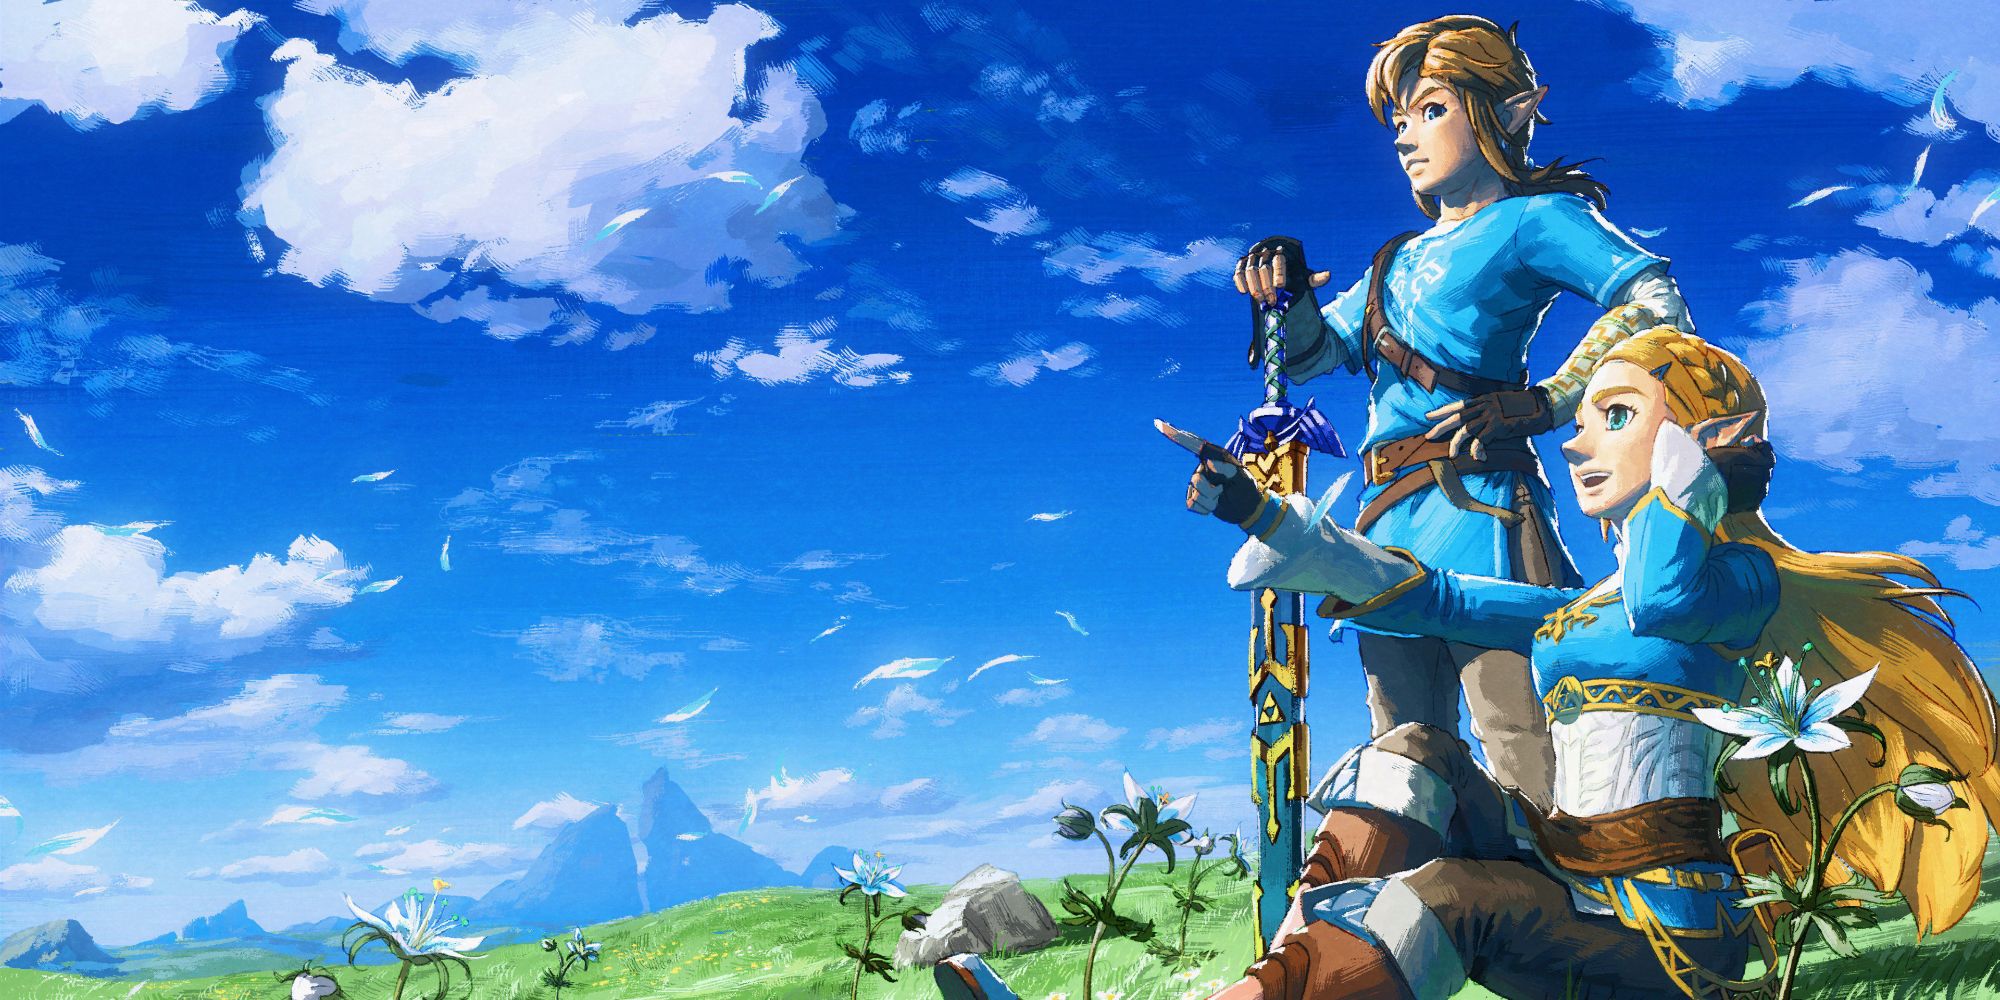 An Older Link & Zelda Would Make New Games Like BOTW 2 Better